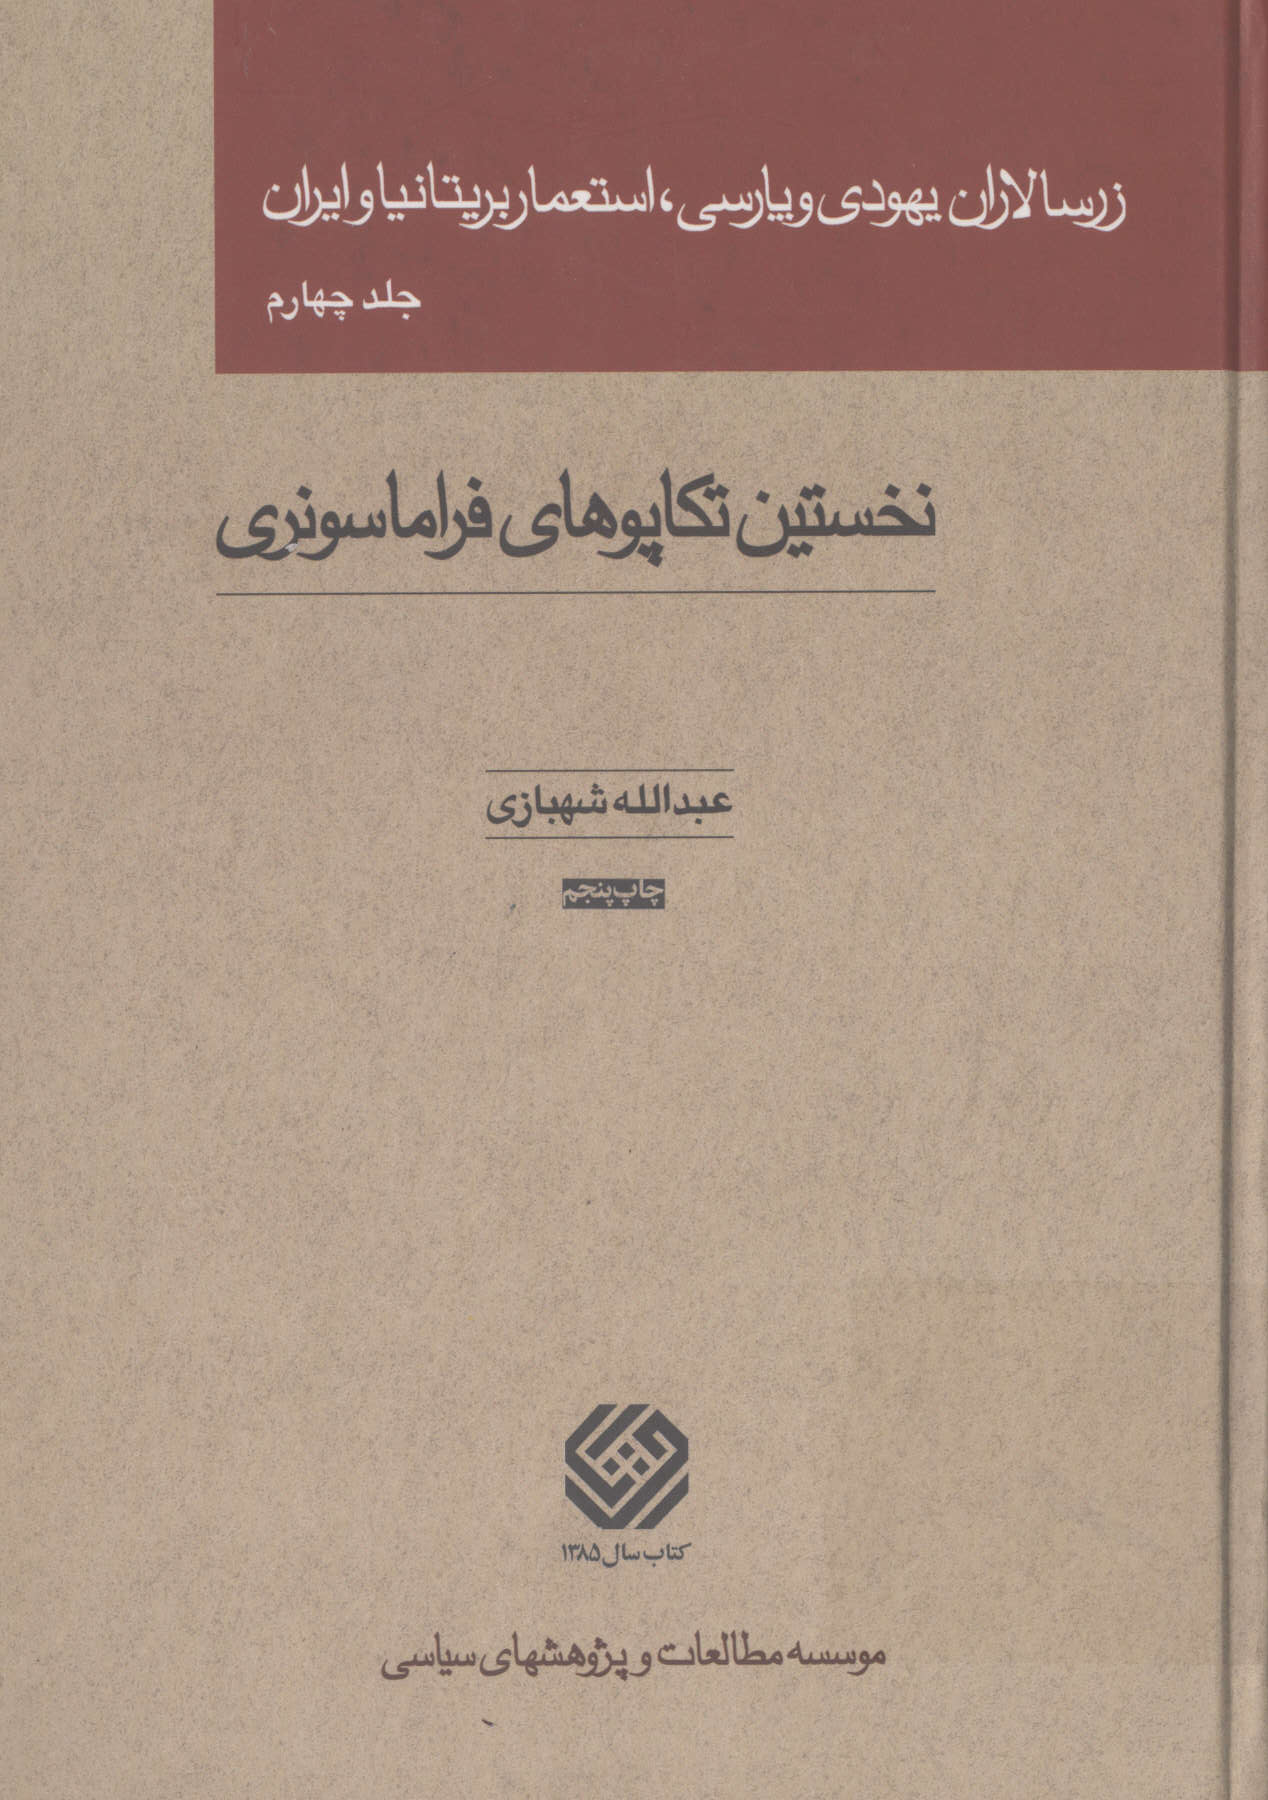 زرسالاران یهودی و پارسی، استعمار بریتانیا و ایران جلد چهارم